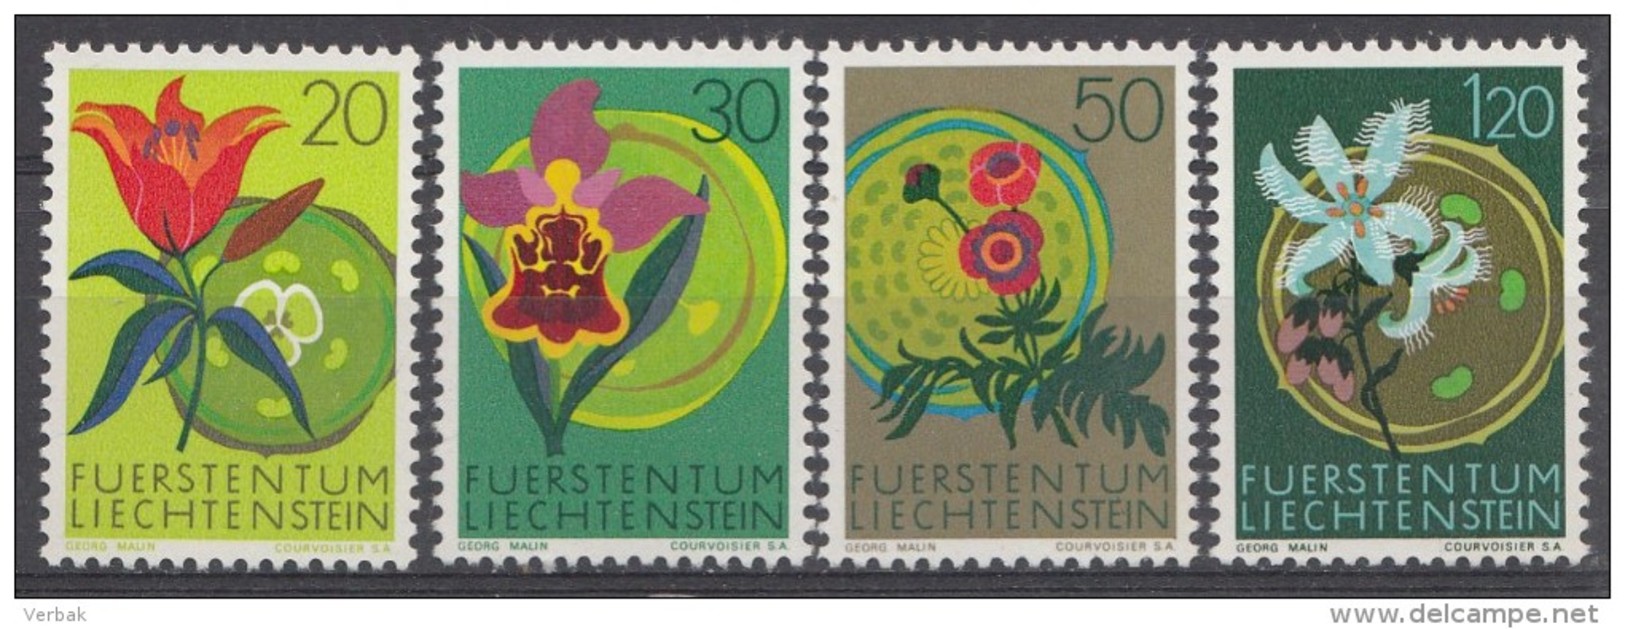 Liechtenstein 1970  Mi.nr.: 521-524 Europäisches Naturschutzjahr  MNH / POSTFRIS / NEUF SANS CHARNIERE - Unused Stamps